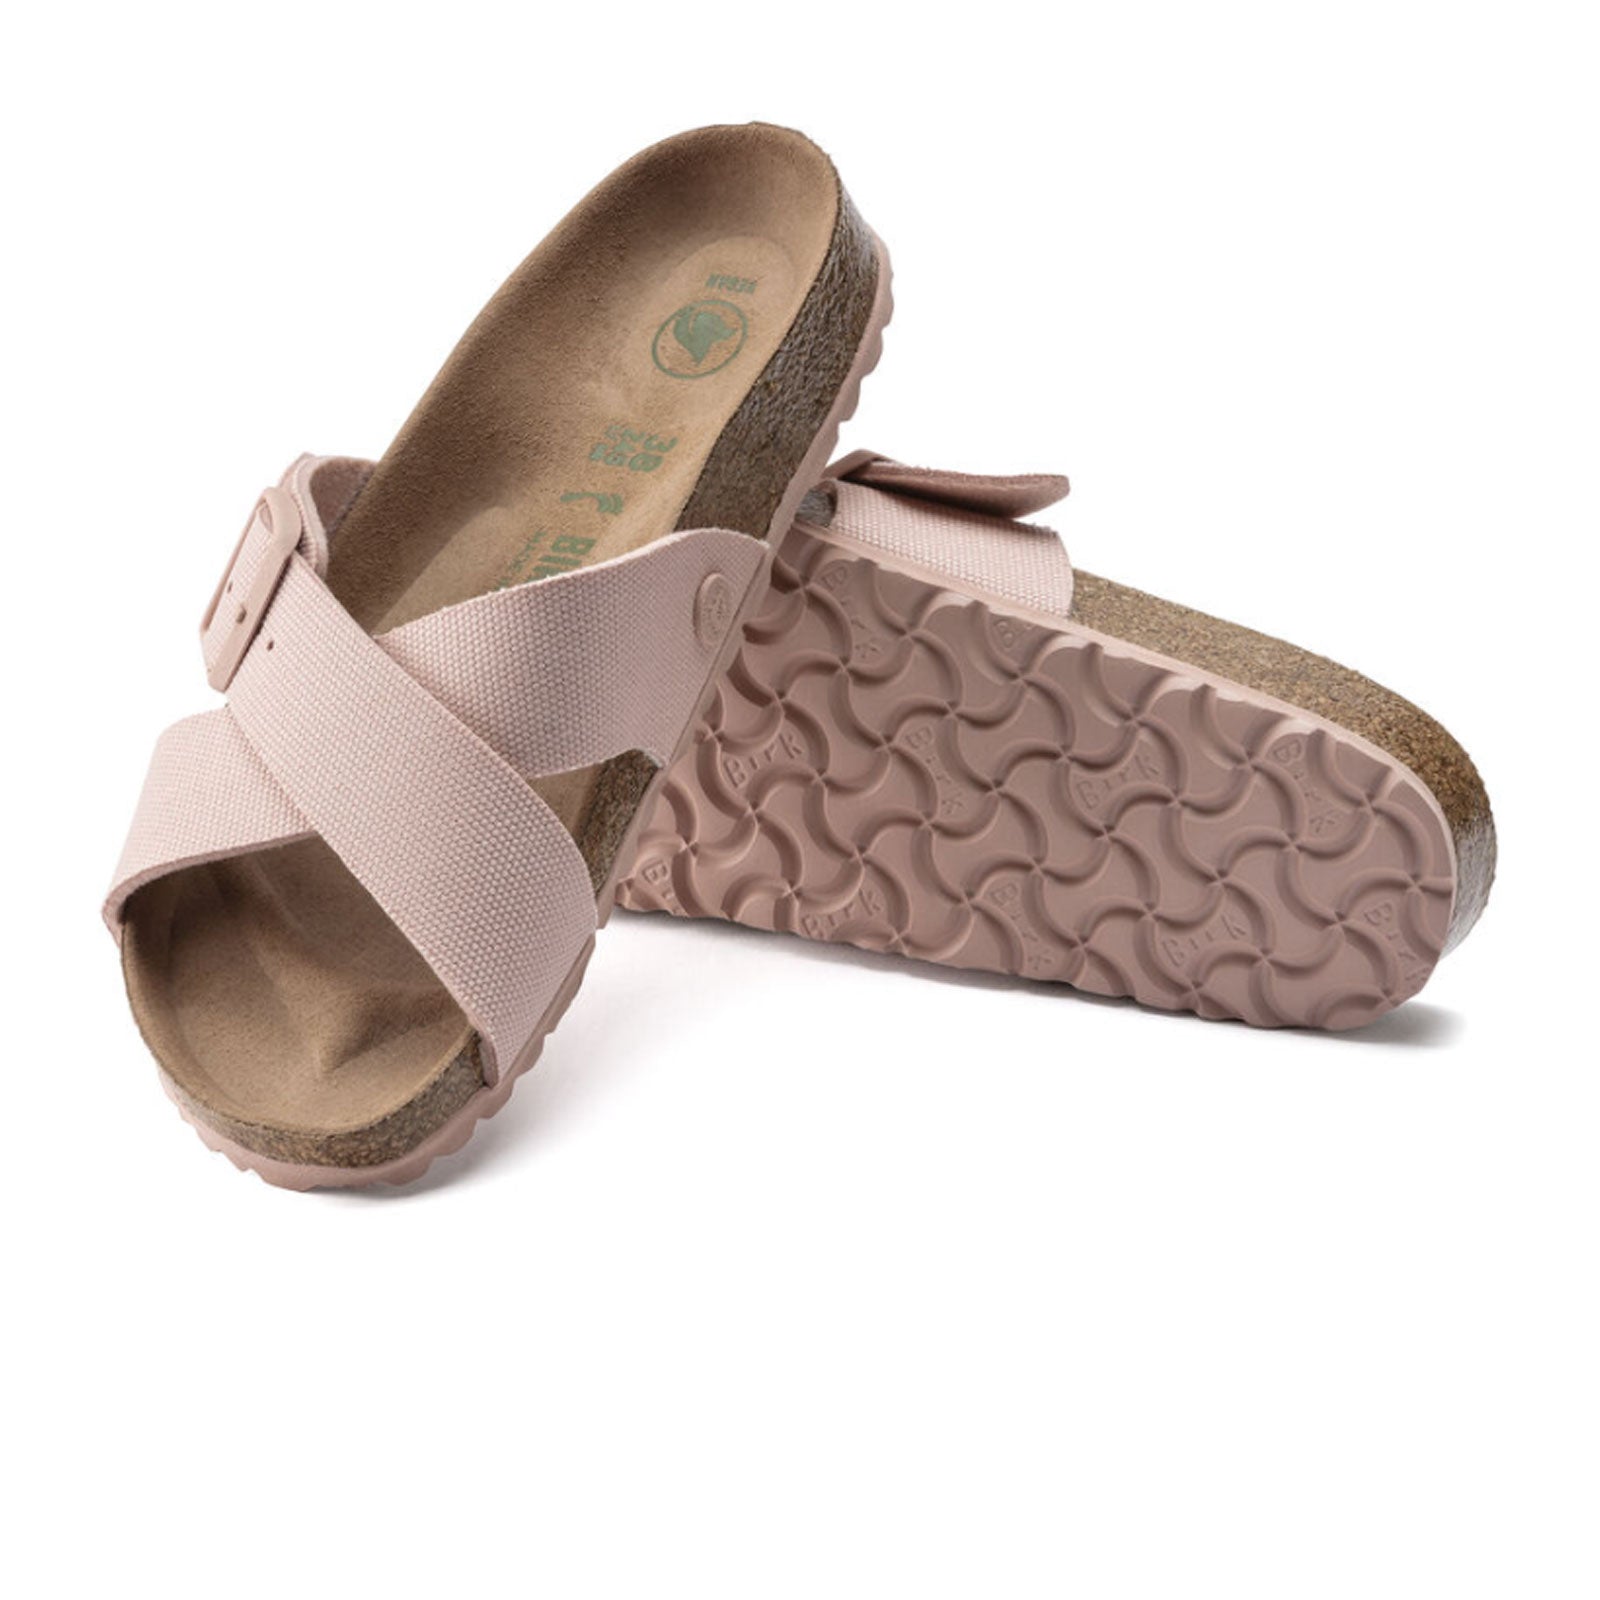 Birkenstock Siena Narrow Slide Sandal - Soft The Heel Shoe Fitters